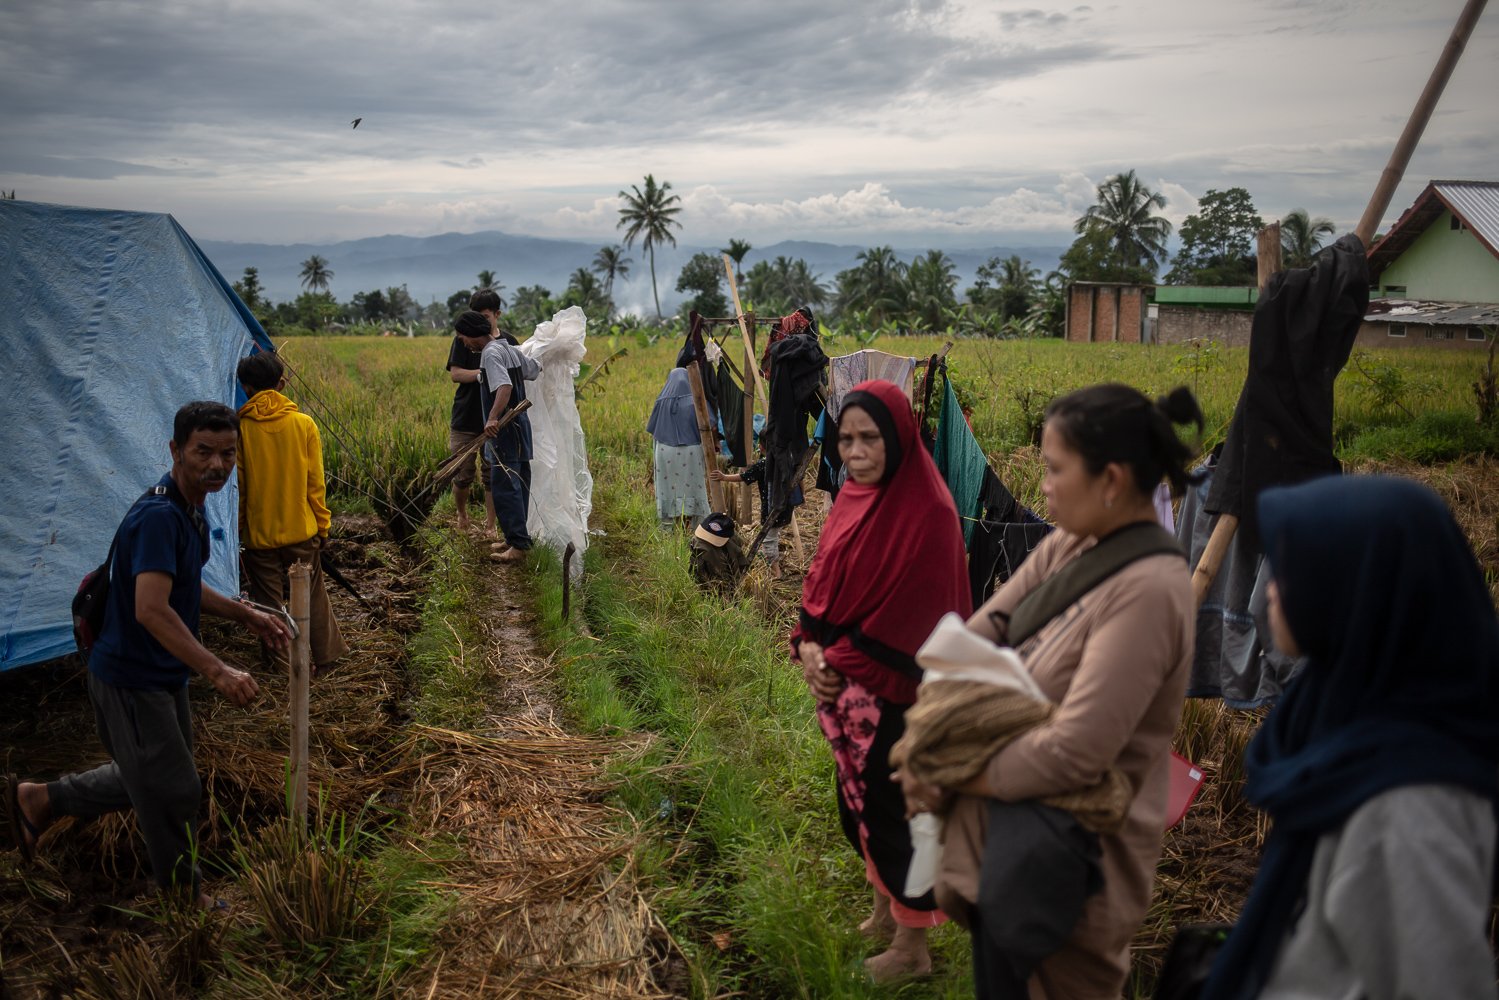 Sejumlah pengungsi bergotong royong medirikan tenda pengungsian pasca gempa bumi dengan magnitude 5.6 di Desa Gasol, Cugenang, Cianjur, Jawa Barat, Jumat (25/11). Badan Nasional Penanggulangan Bencana (BNPB) mencatat total 321 orang meninggal dunia, jumlah pengungsi hingga hari ini mencapai 73.874 orang akibat gempa di Cianjur.